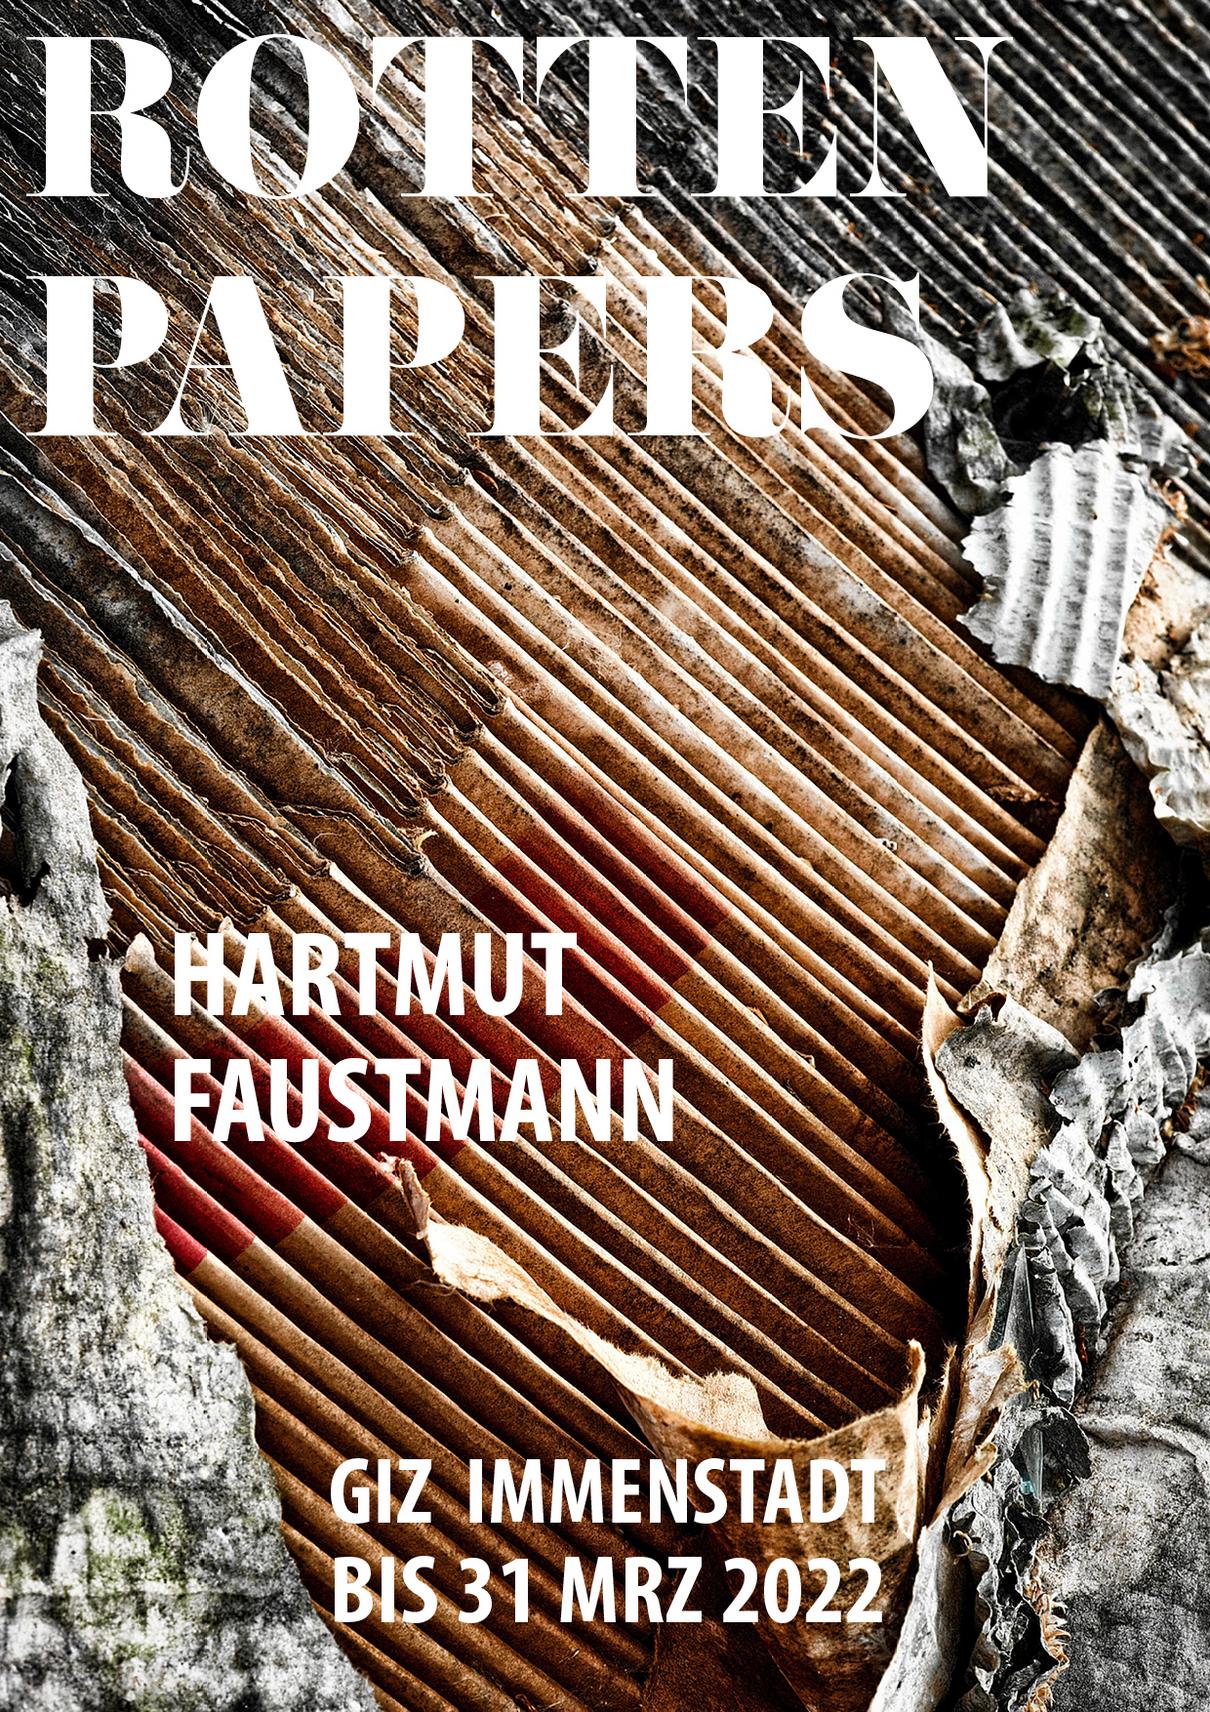 Fotoausstellung Rotten Papers von Hartmut Faustmann